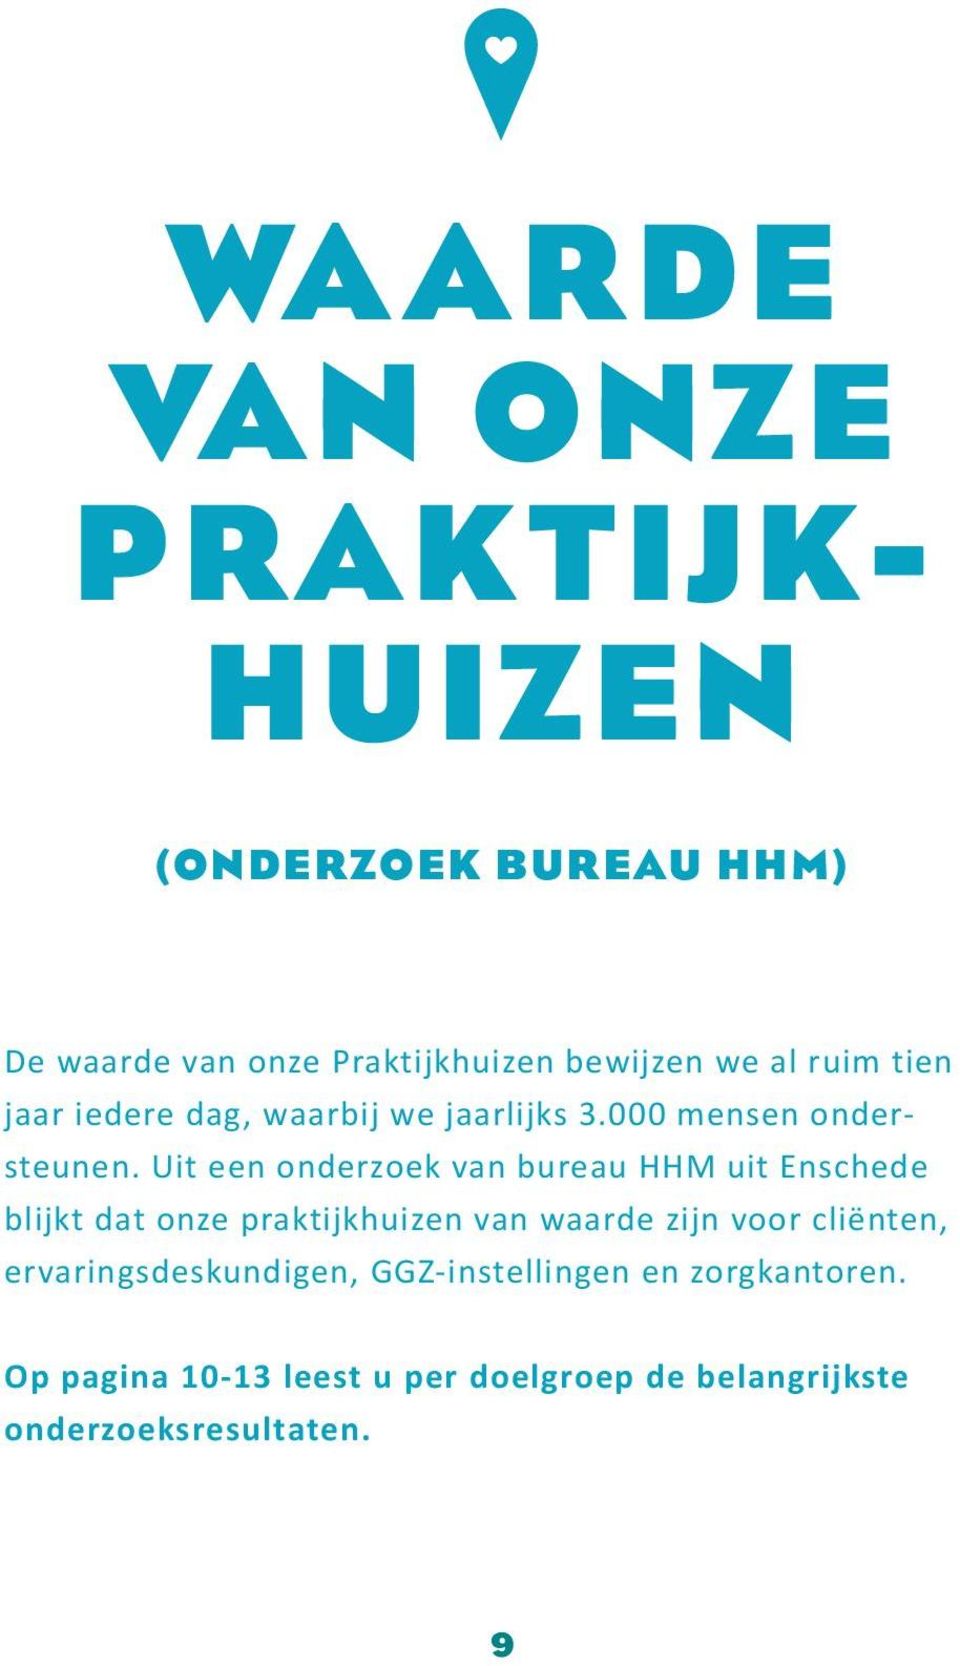 Uit een onderzoek van bureau HHM uit Enschede blijkt dat onze praktijkhuizen van waarde zijn voor